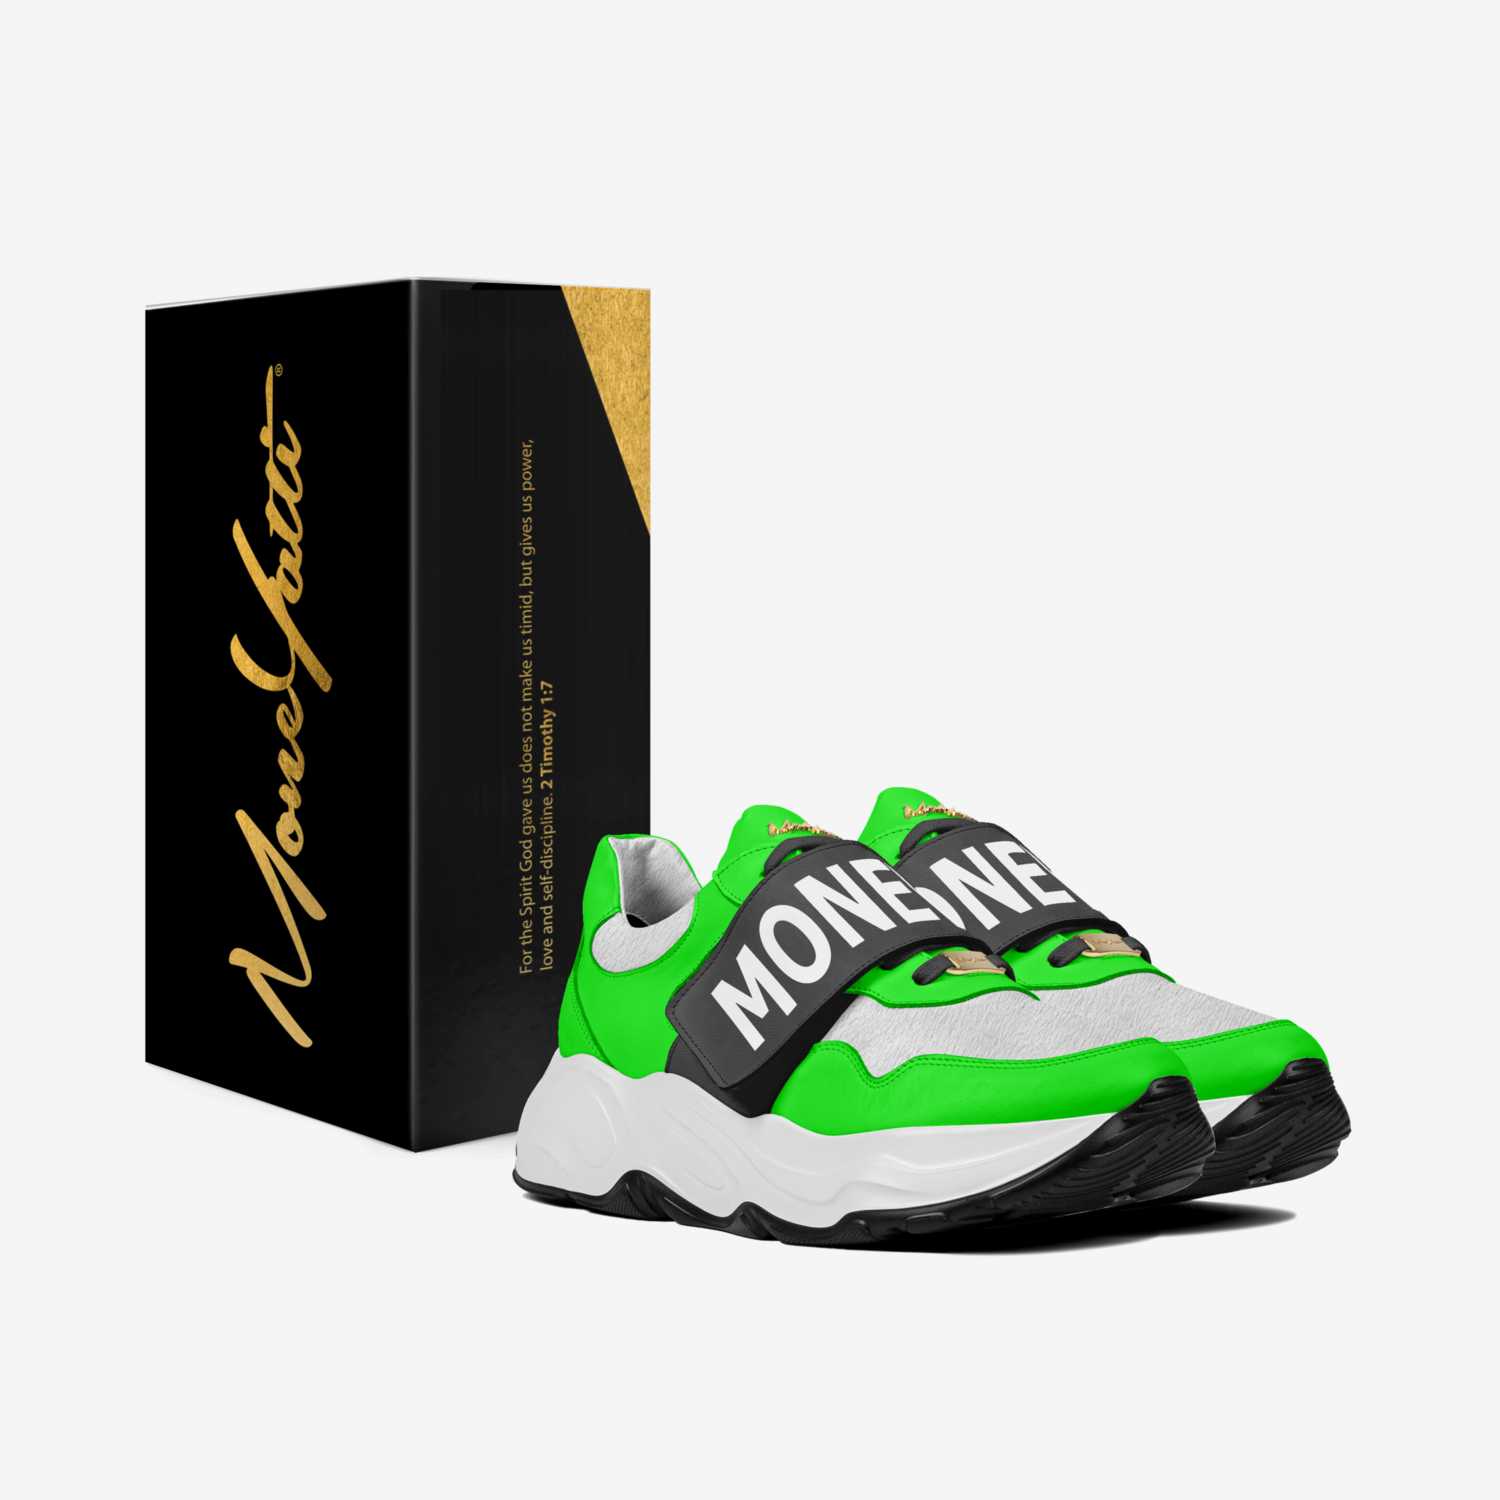 IZ036 custom made in Italy shoes by Moneyatti Brand | Box view